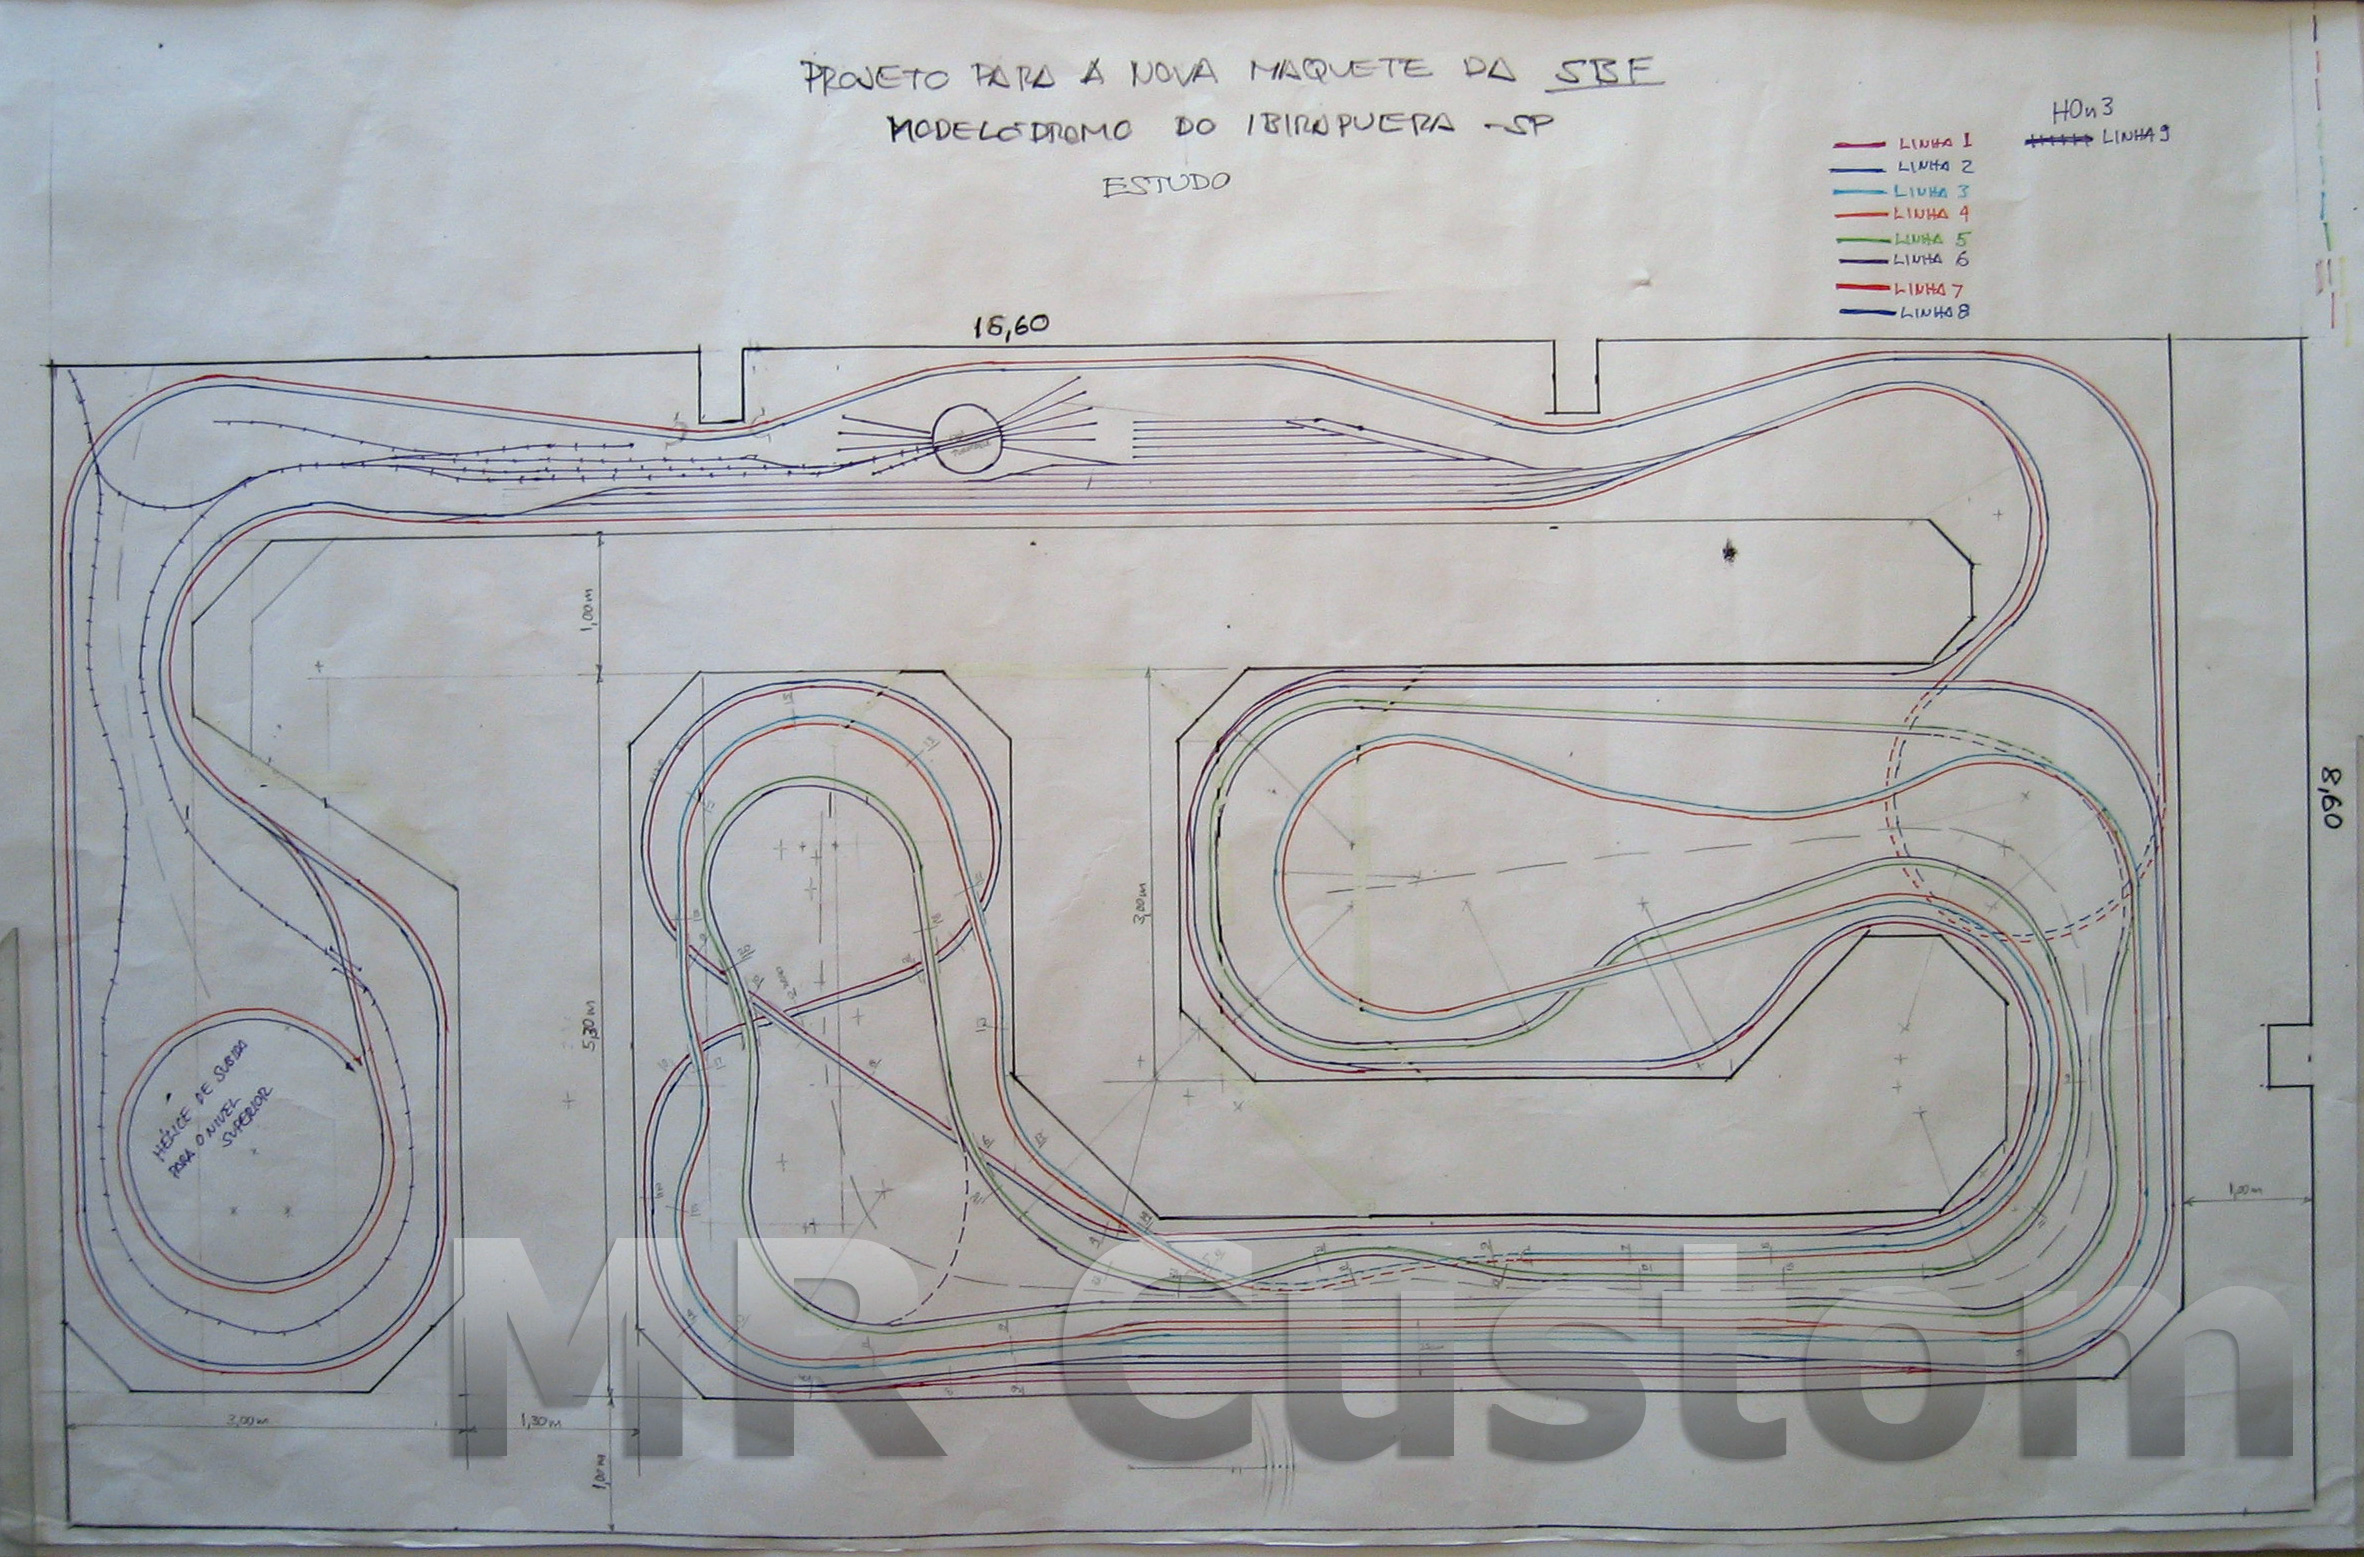 Desenho inicial do traçado dos trilhos para a nova maquete da SBF - nível inferior